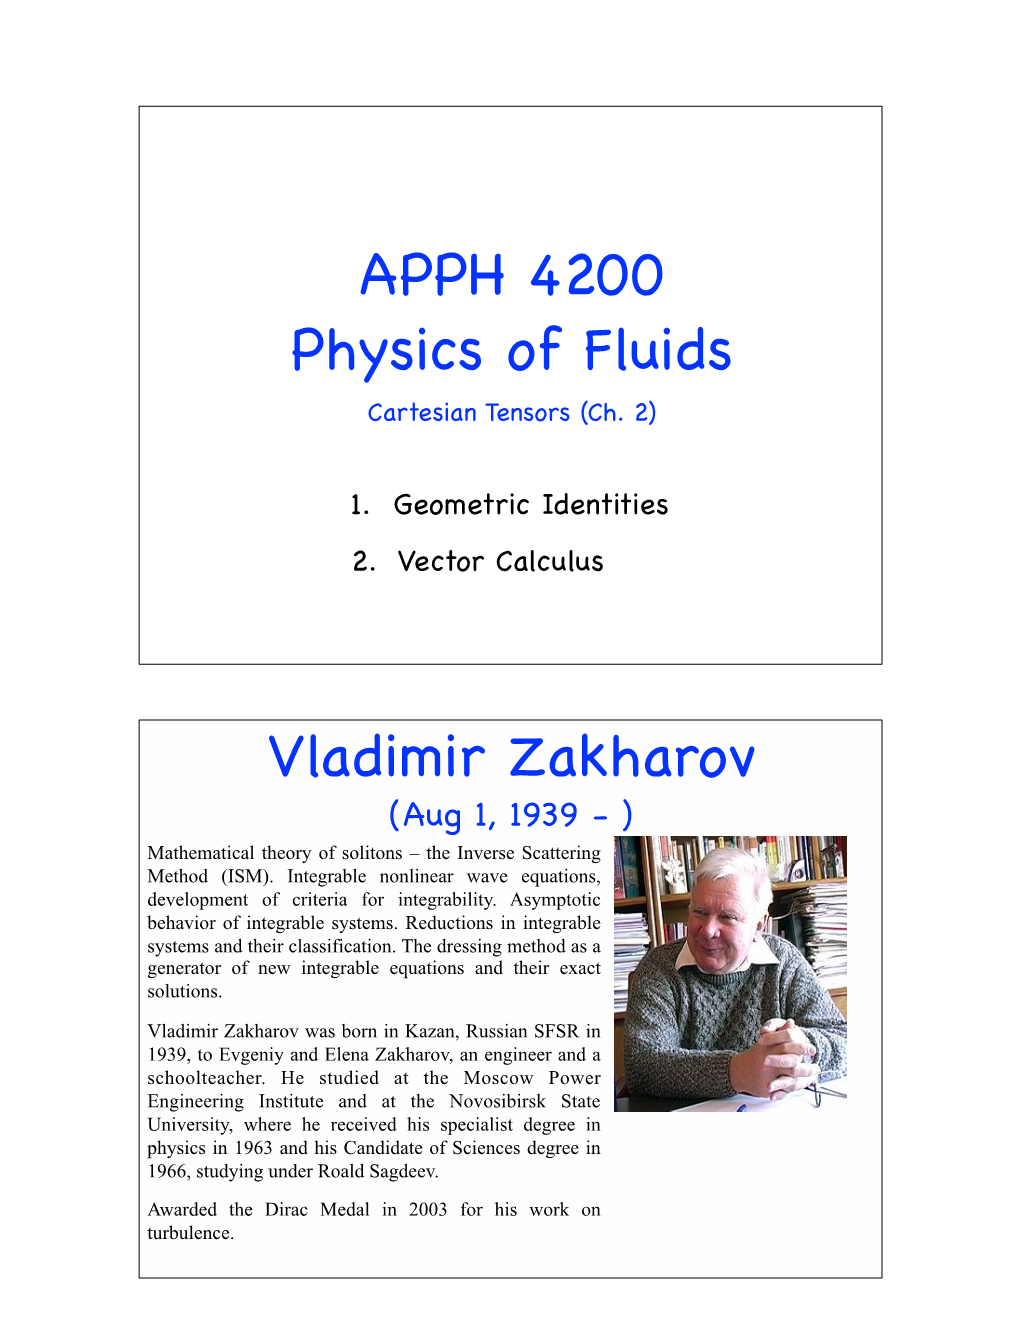 APPH 4200 Physics of Fluids Vladimir Zakharov